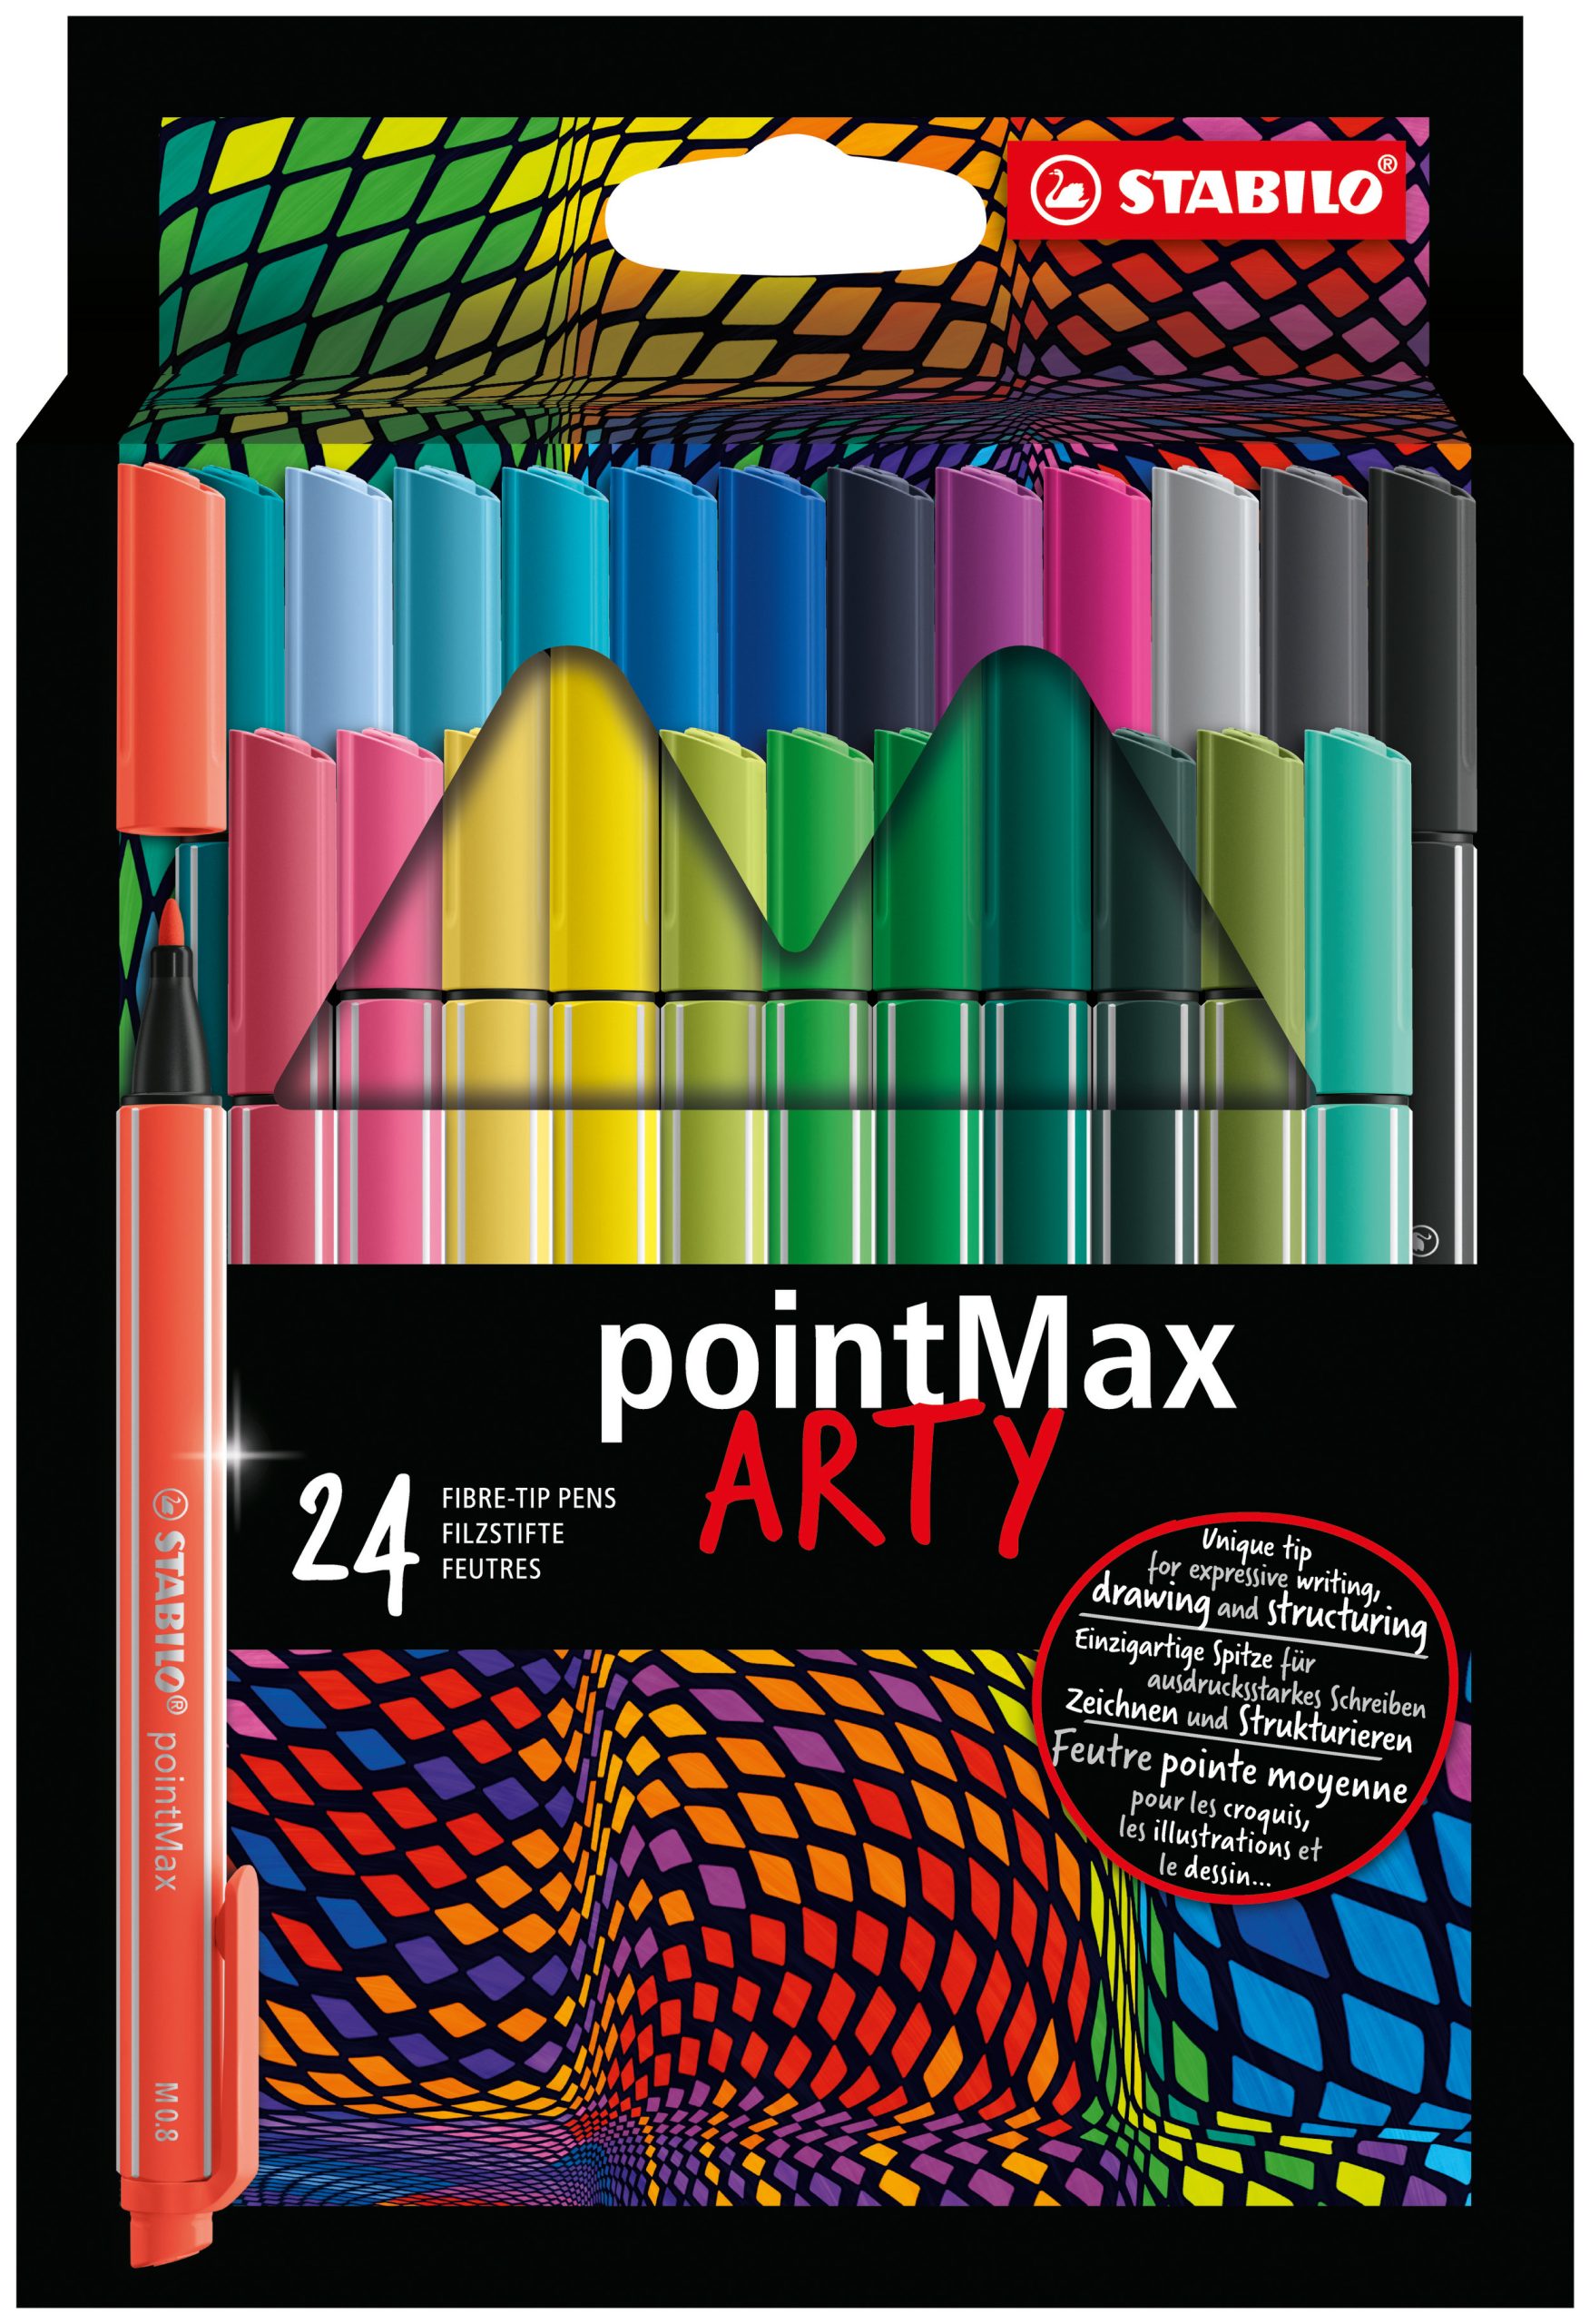 Fineliner Premium - STABILO pointMax - ARTY - Astuccio da 24 - Colori  assortiti